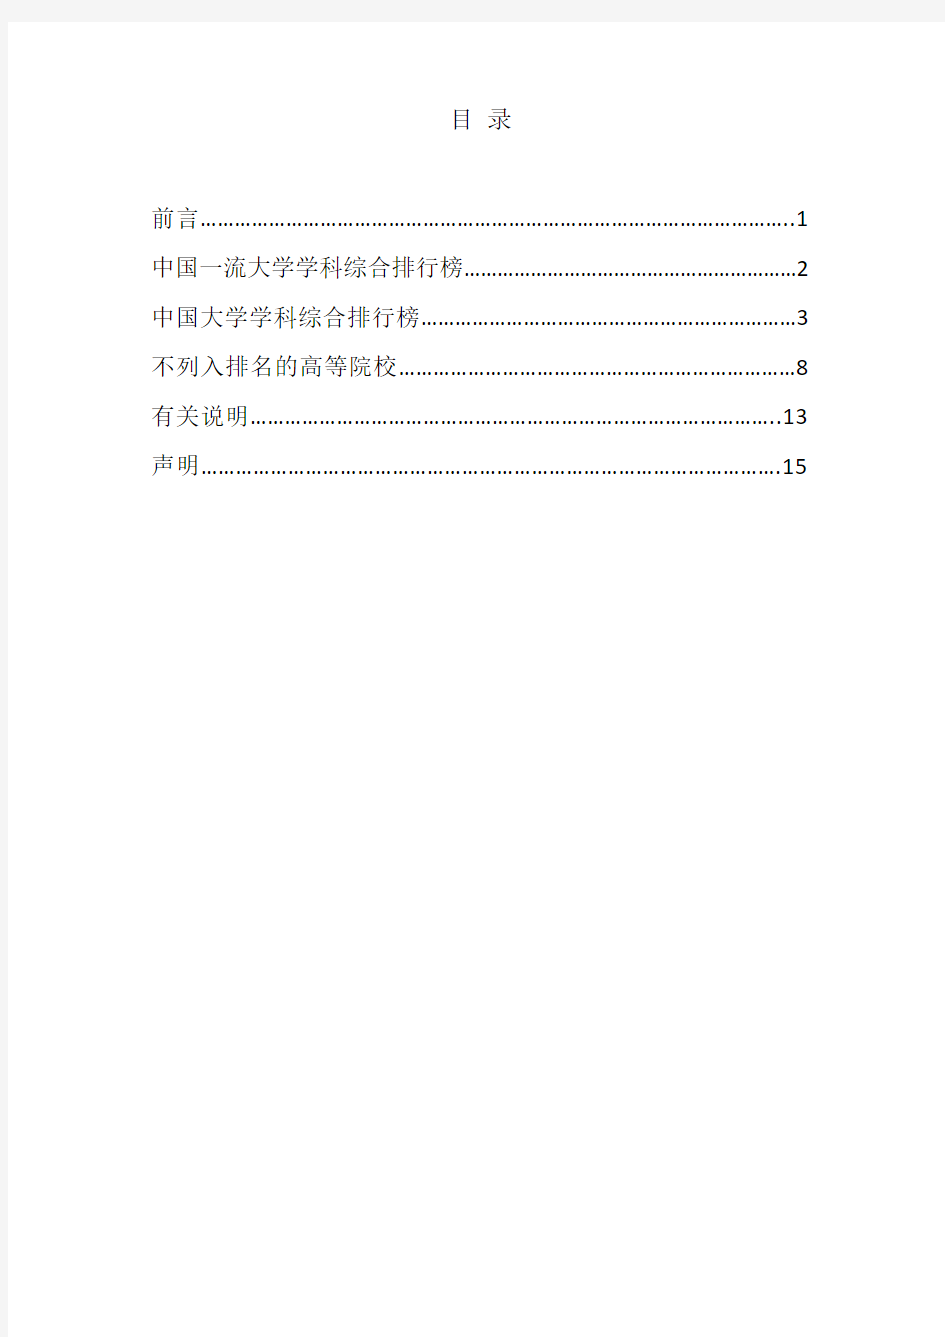 中国大学学科综合排行榜(2018版)